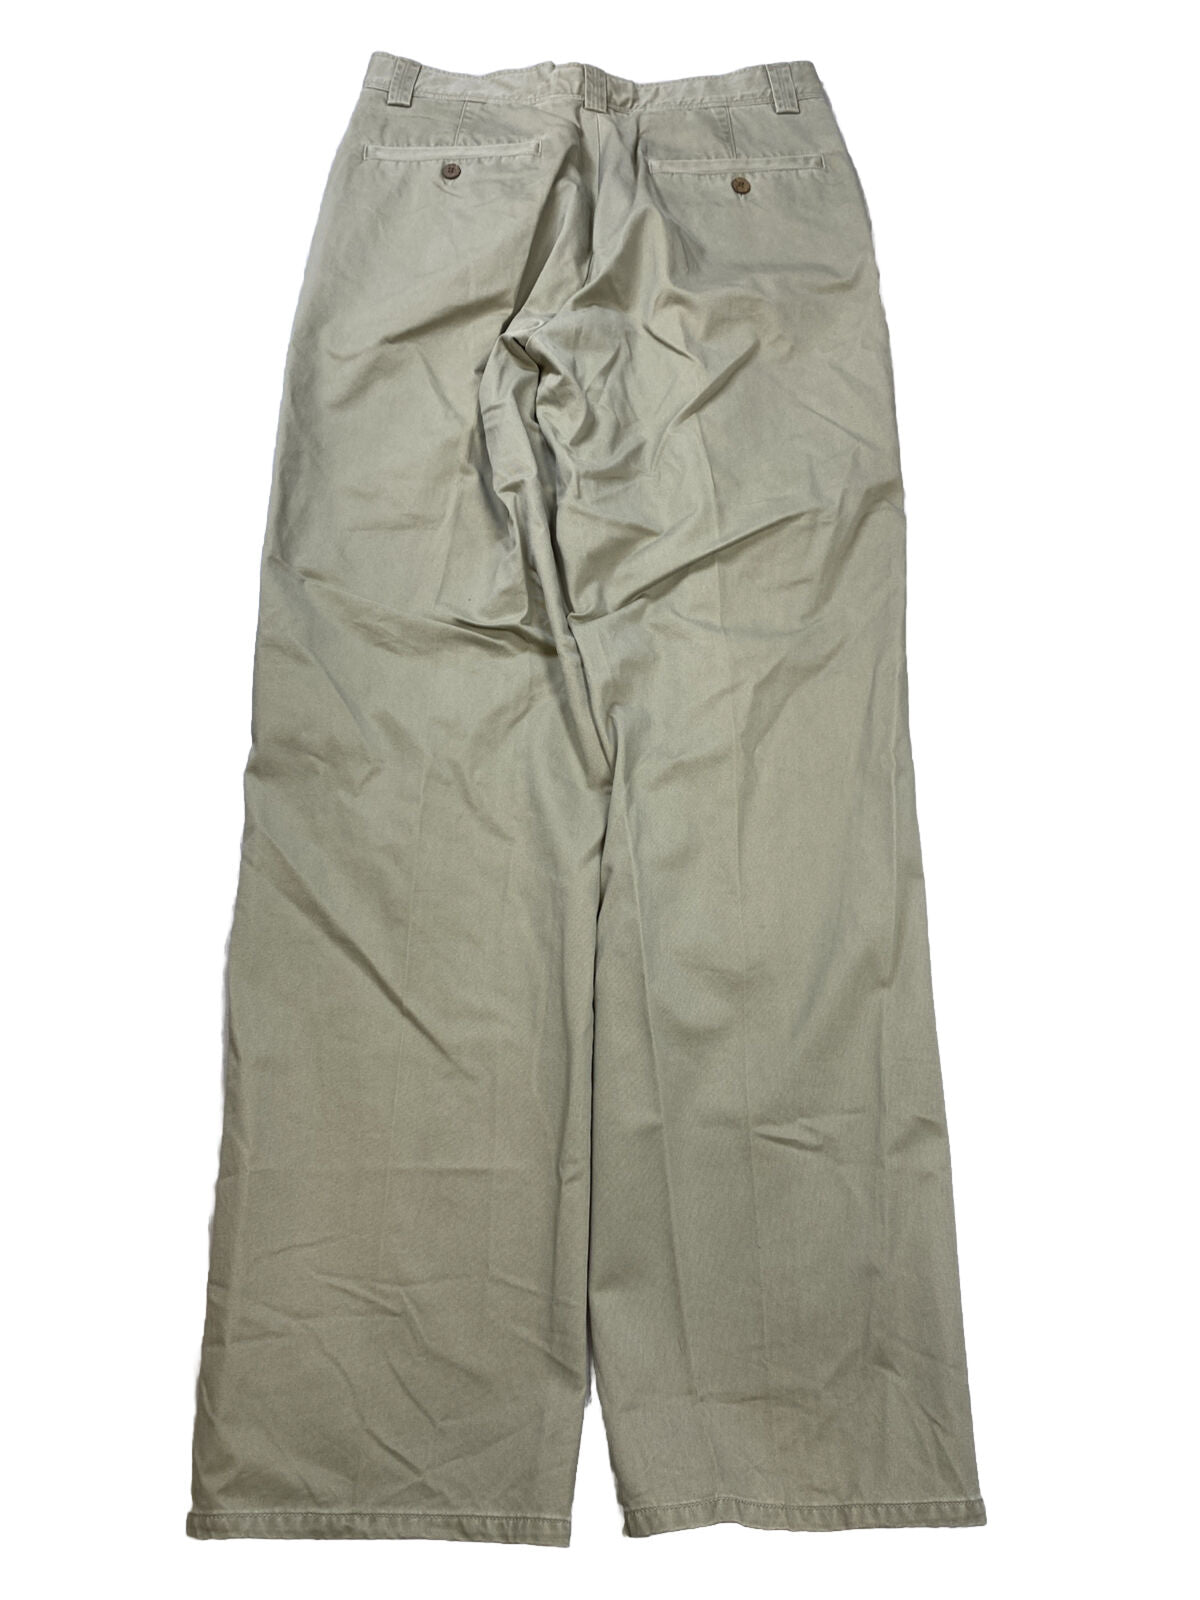 NUEVO Tommy Bahama Pantalones chinos color caqui plisados ​​de algodón beige para hombre - 32